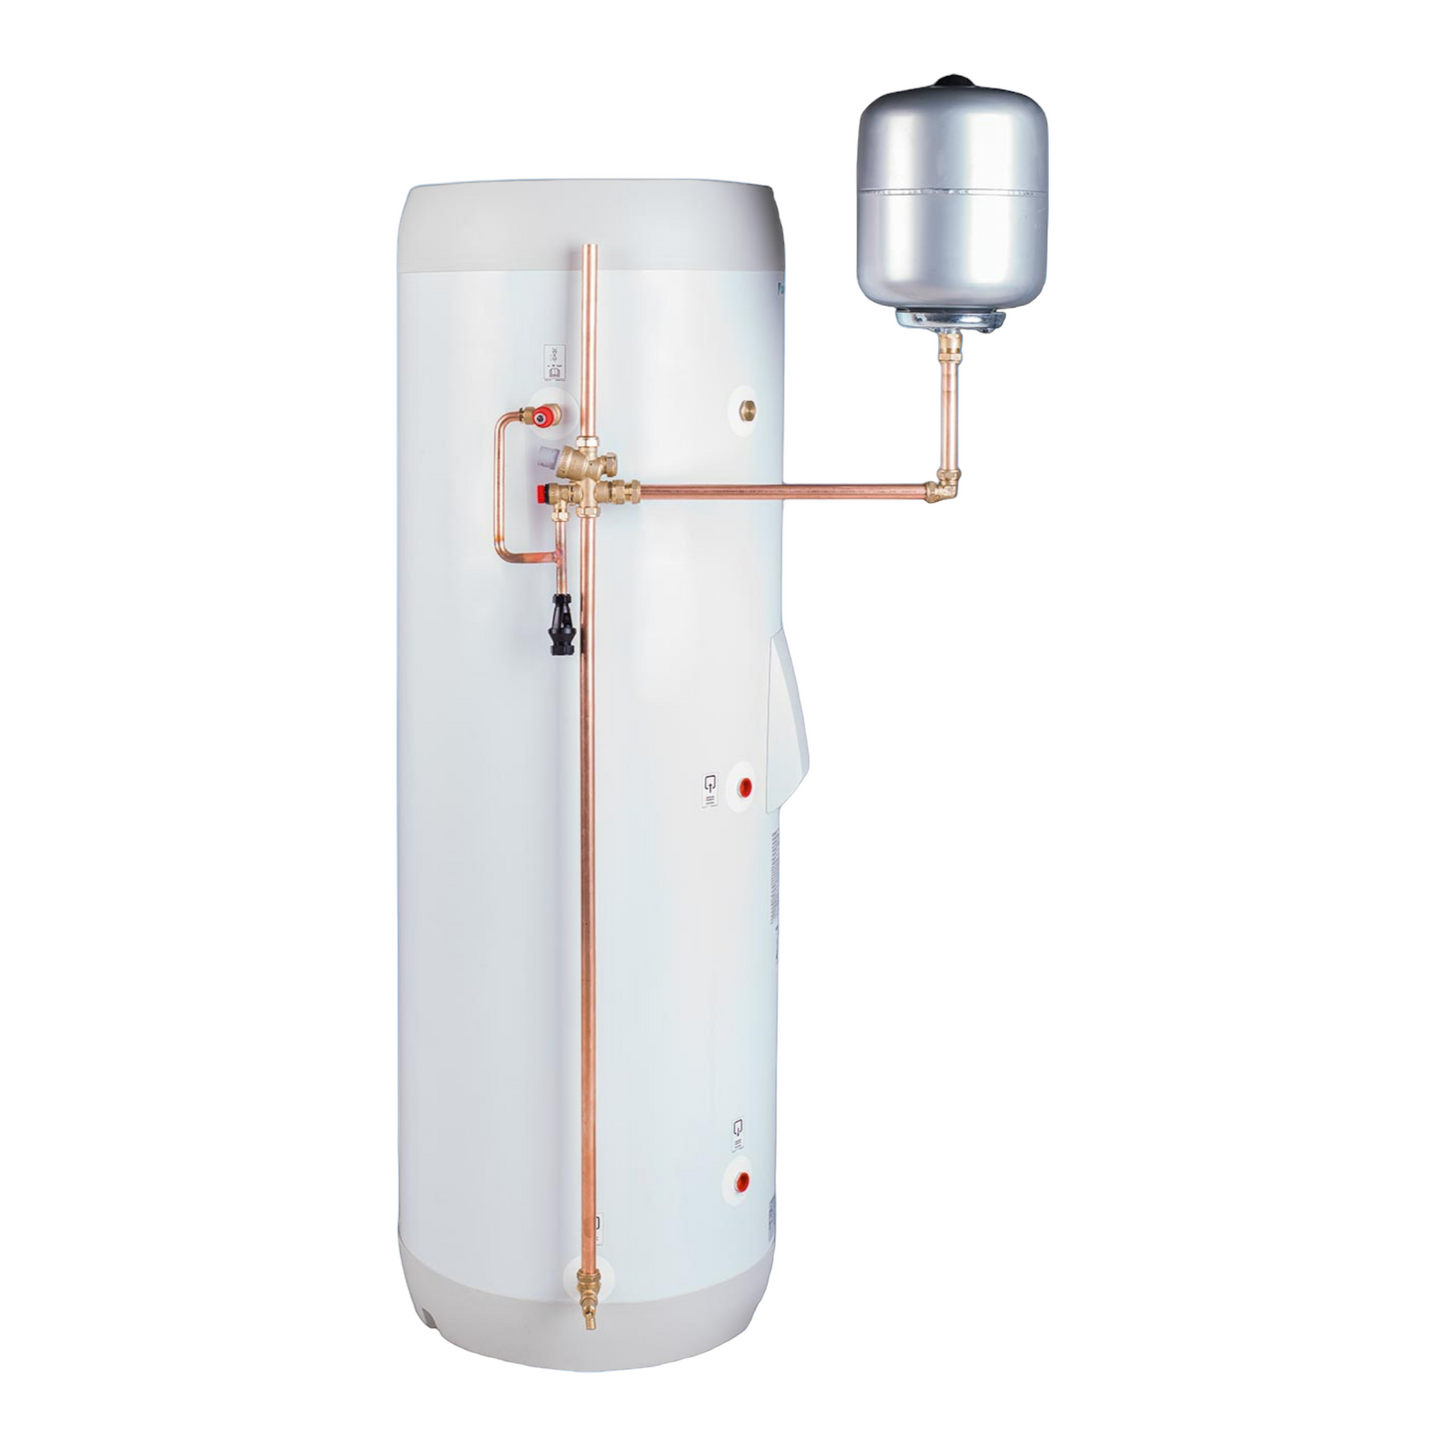 Daikin Hot Water Cylinder & Accessories